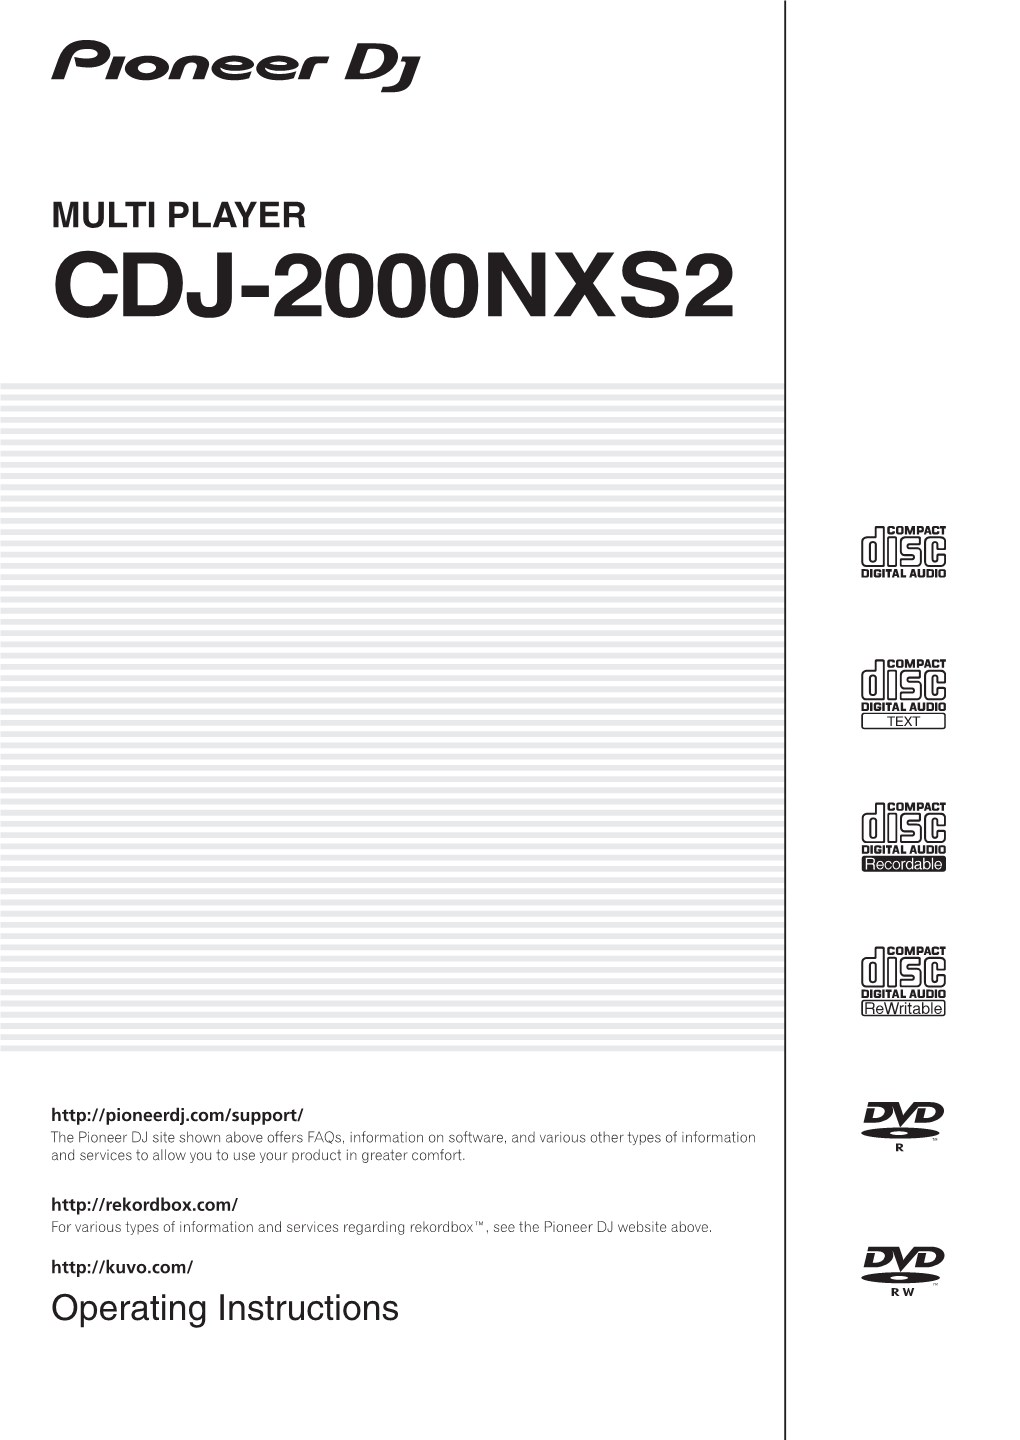 Cdj-2000Nxs2